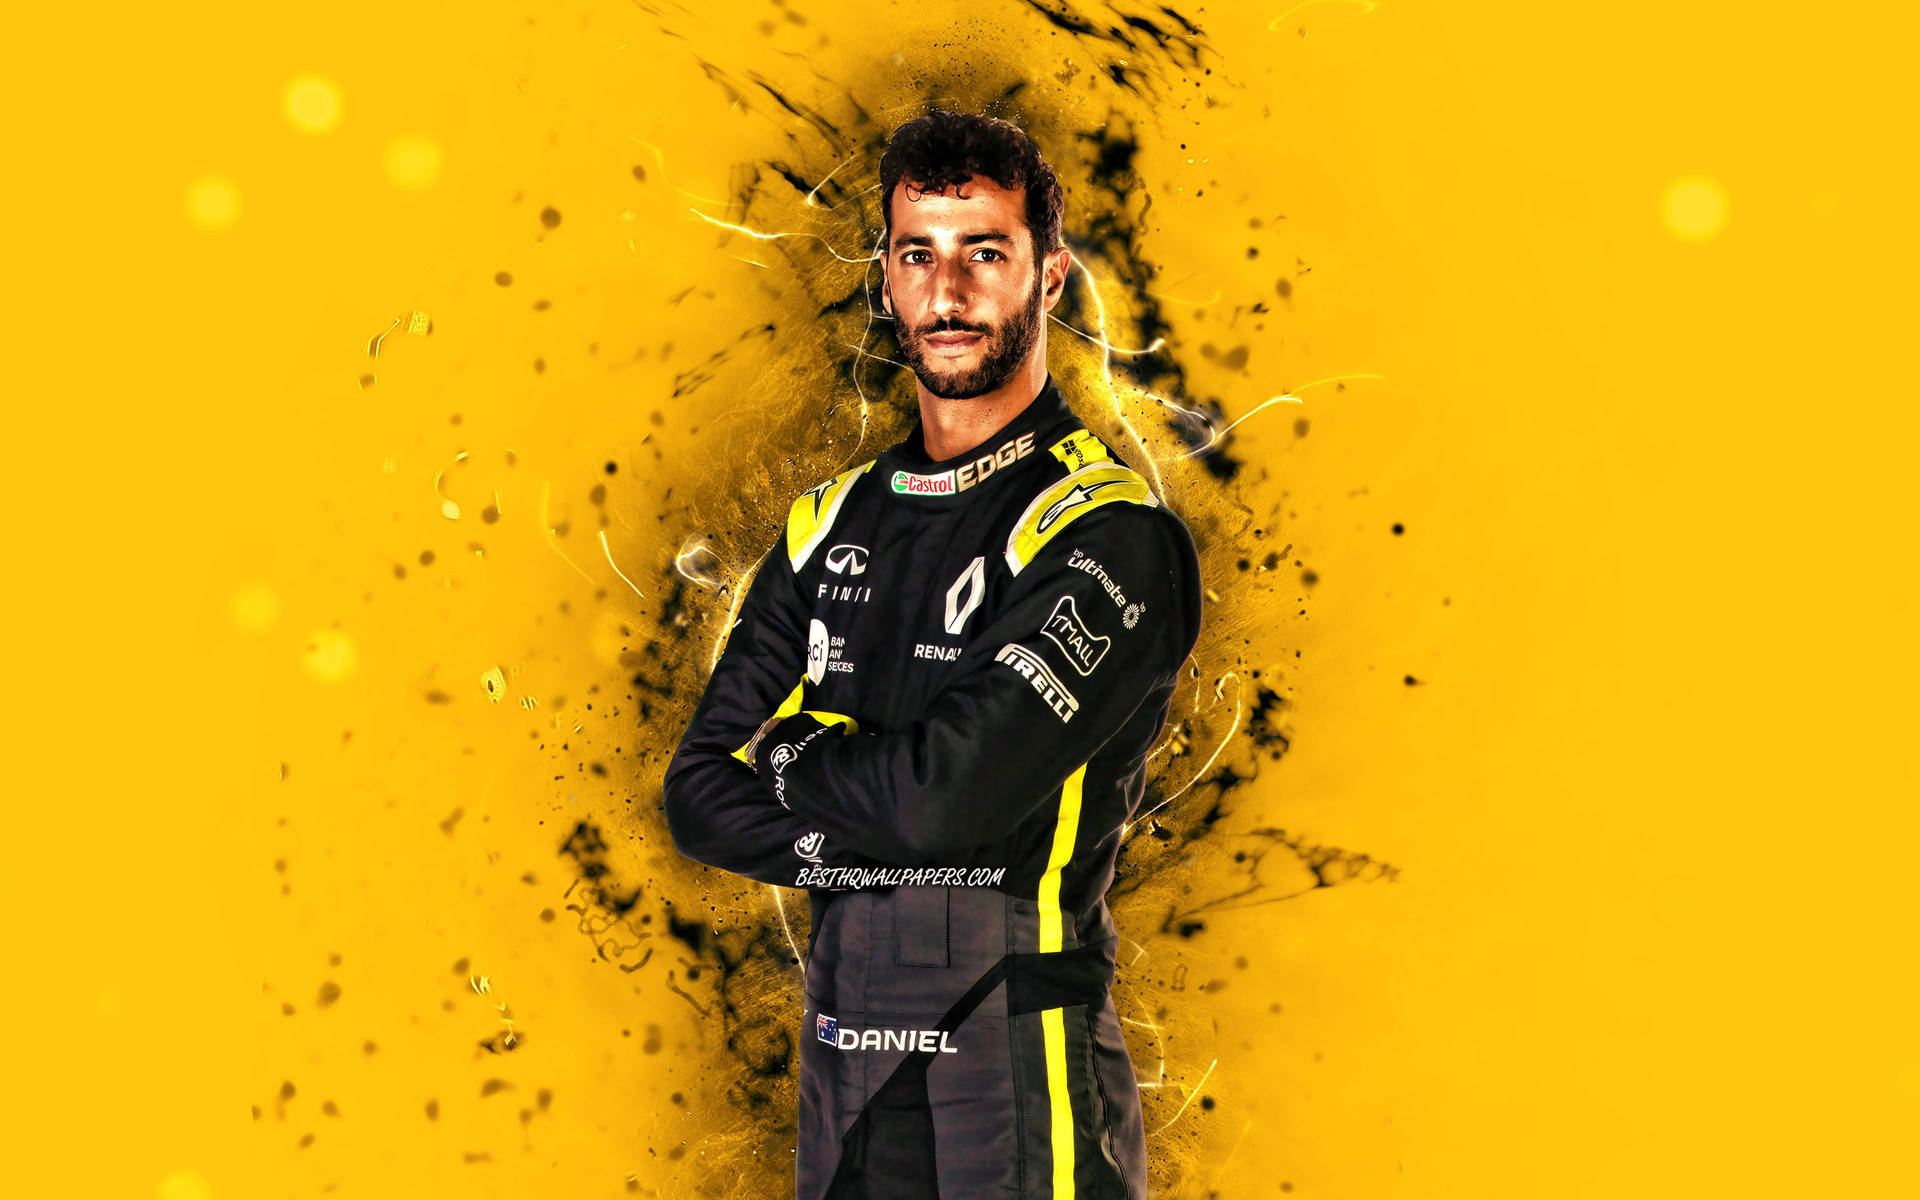 [100+] Fondos de fotos de Daniel Ricciardo | Wallpapers.com